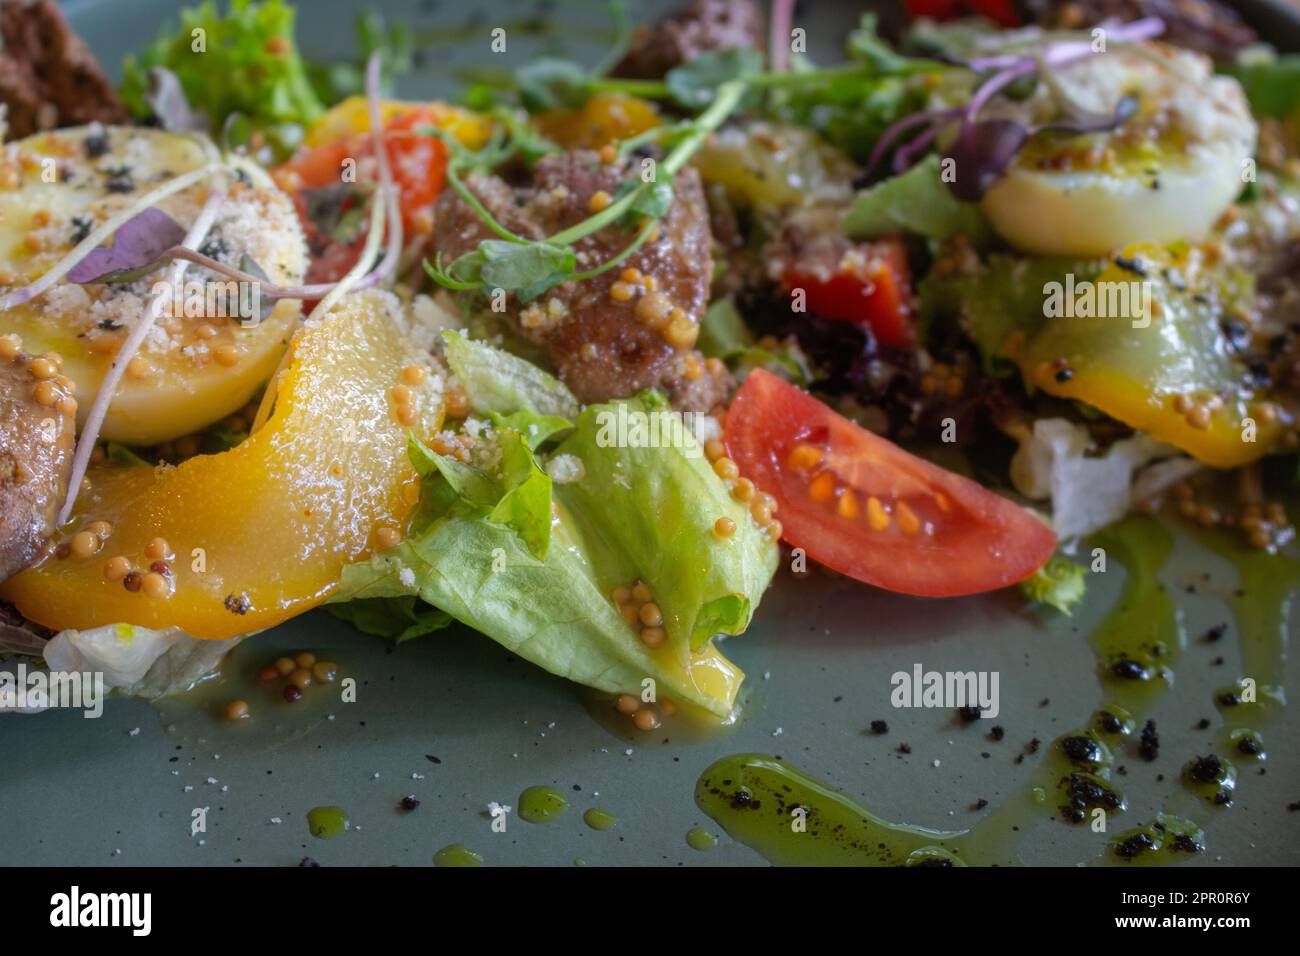 Warmer Lebersalat mit Gemüse. Frischer Gemüsesalat mit Hühnerleber. Gesundes Dinner-Konzept. Italienische Küche. Antioxidationsmehl. Serviertes Essen. Stockfoto